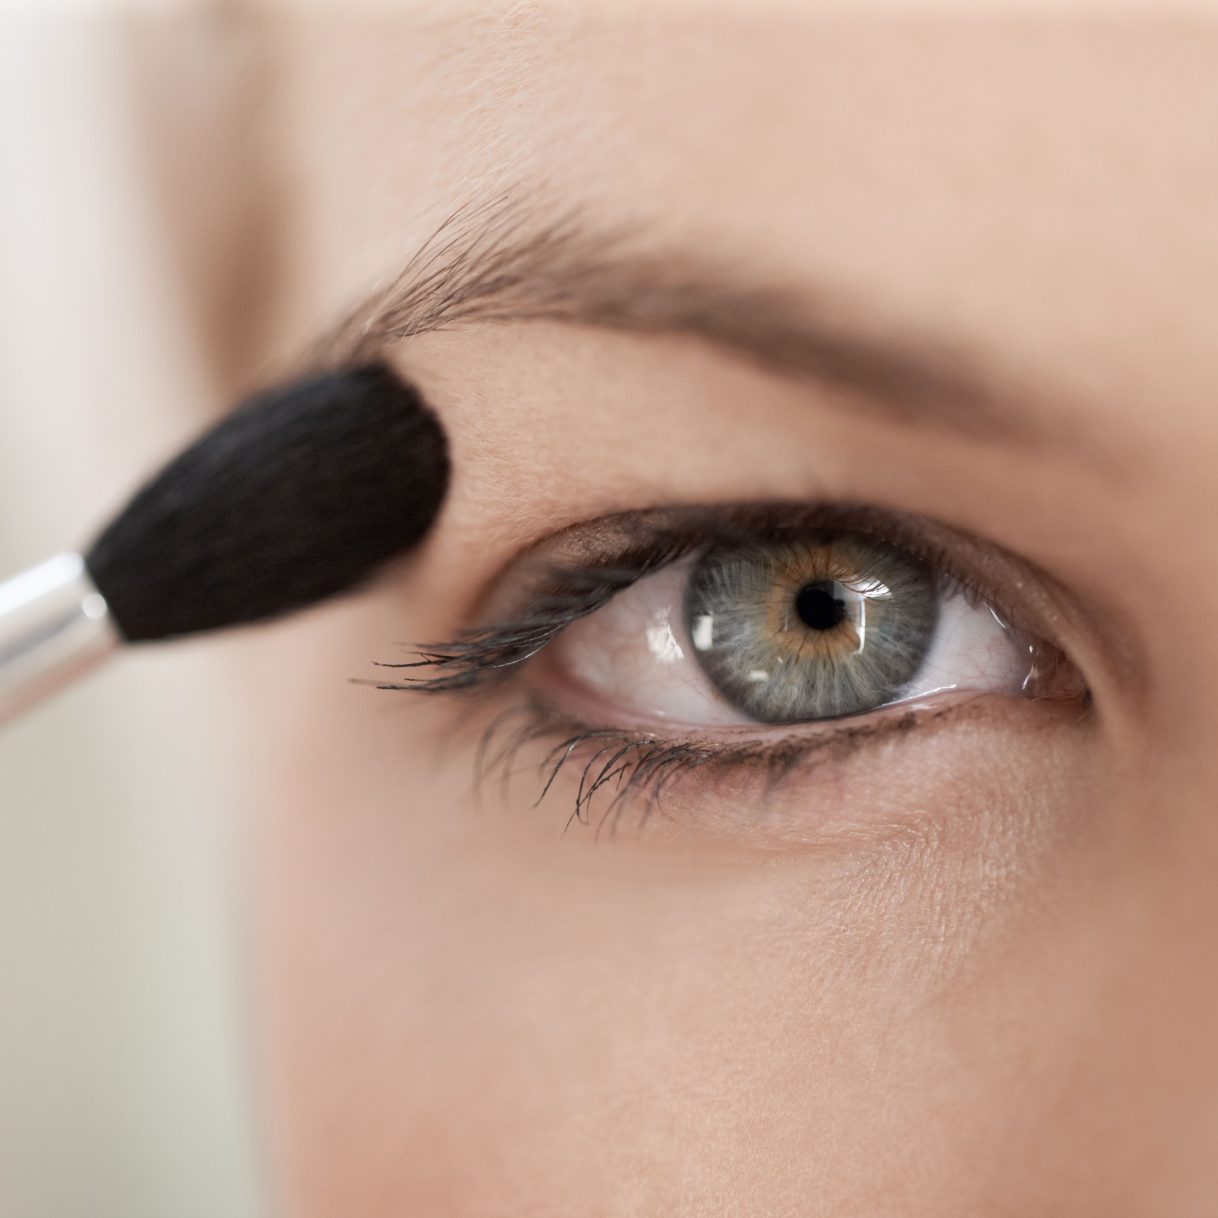 Best Eye Makeup For Hazel Eyes Makeup Tricks For Hooded Eyes Hooded Eyes Makeup Tips And Tricks